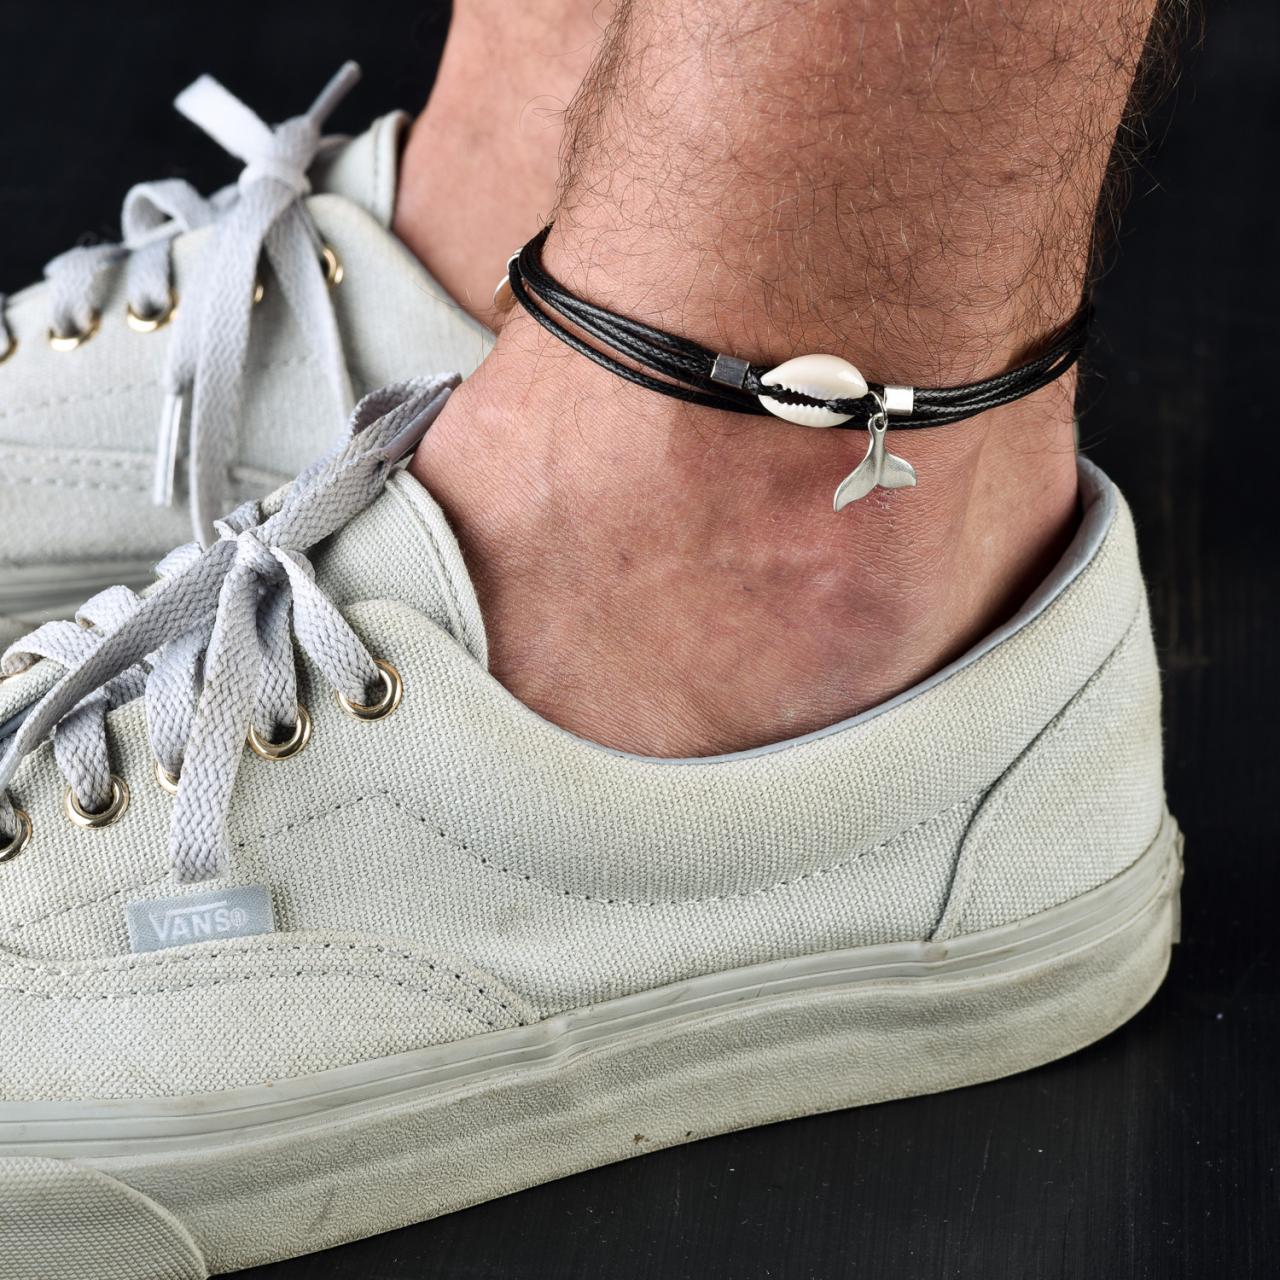 Men's Anklet - Men's Ankle Bracelet - Anklet For Men - Ankle Bracelet For Men - Men's Jewelry - Men's Gift -